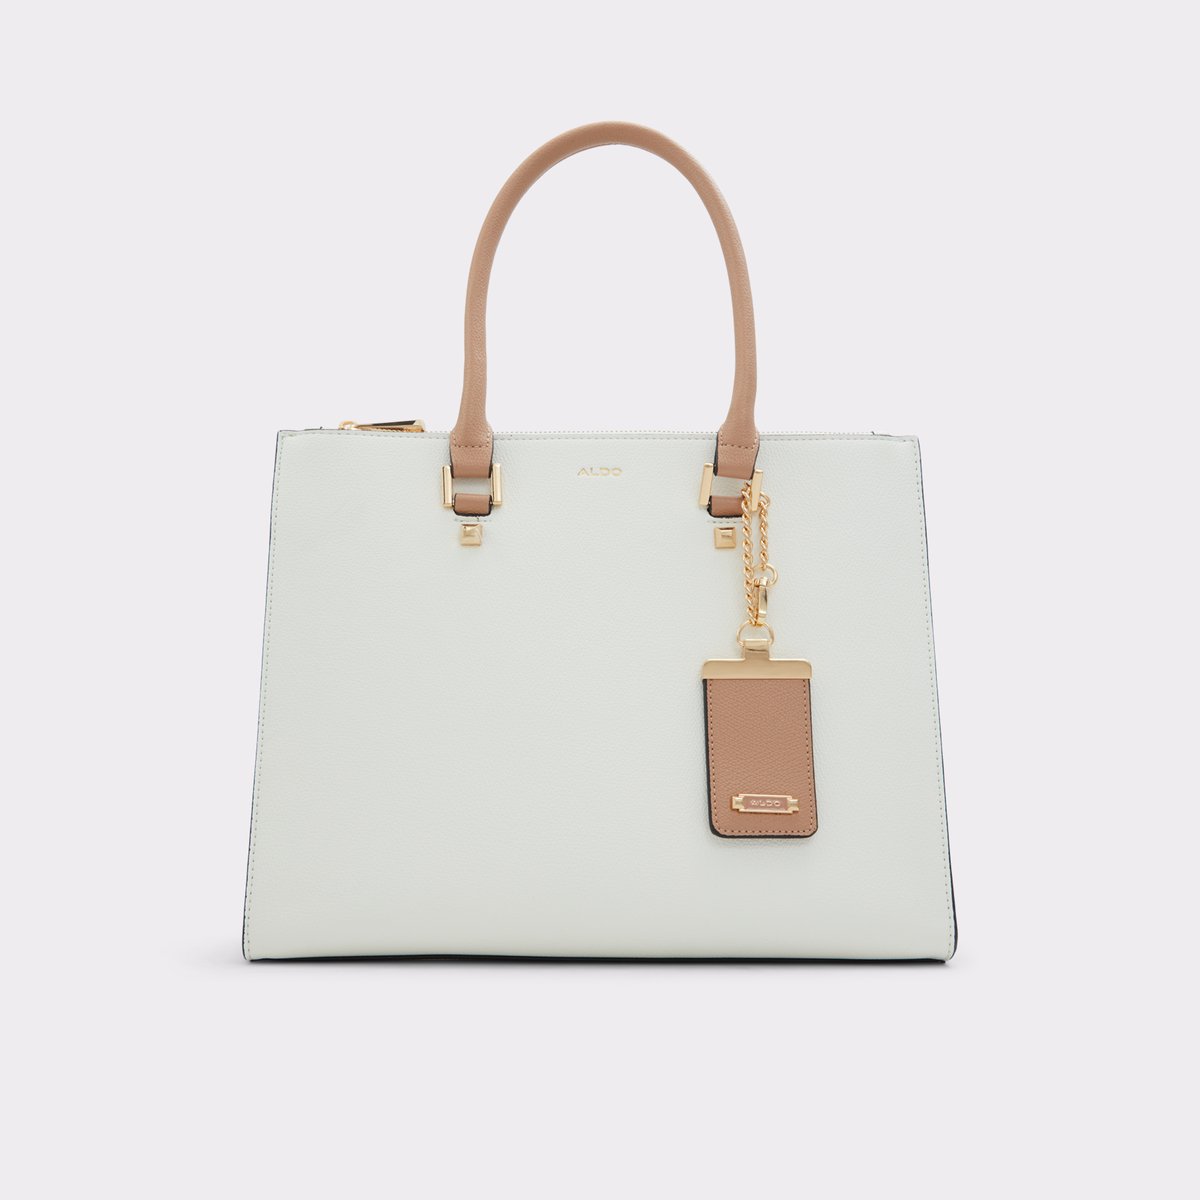 Aldo Rhani Women Handbags